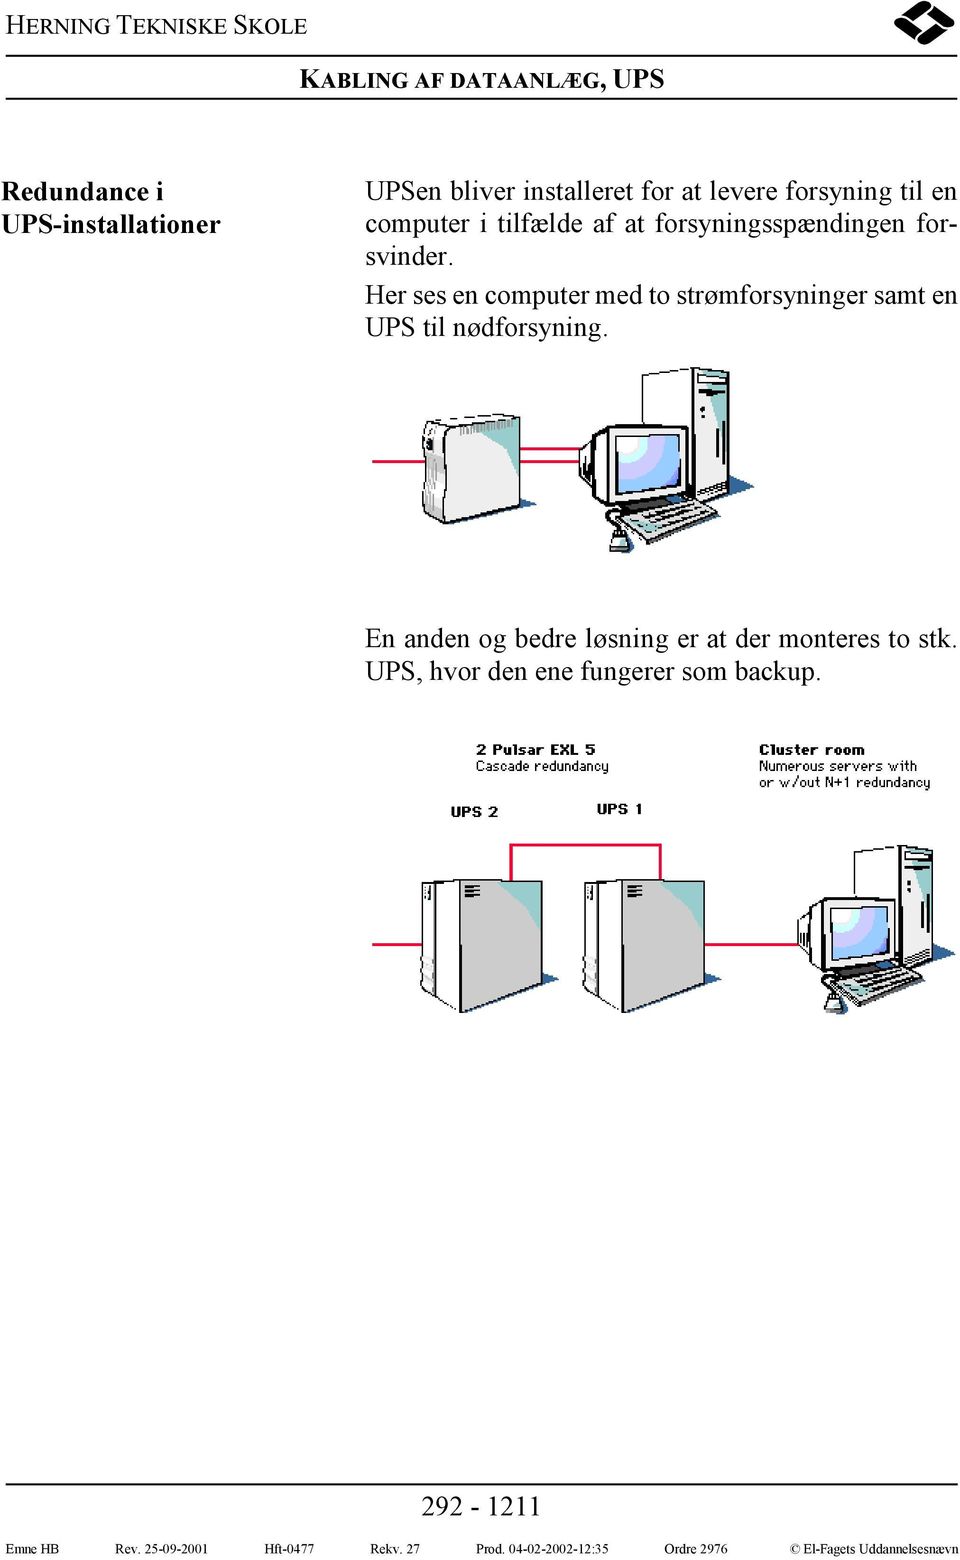 Her ses en computer med to strømforsyninger samt en UPS til nødforsyning.